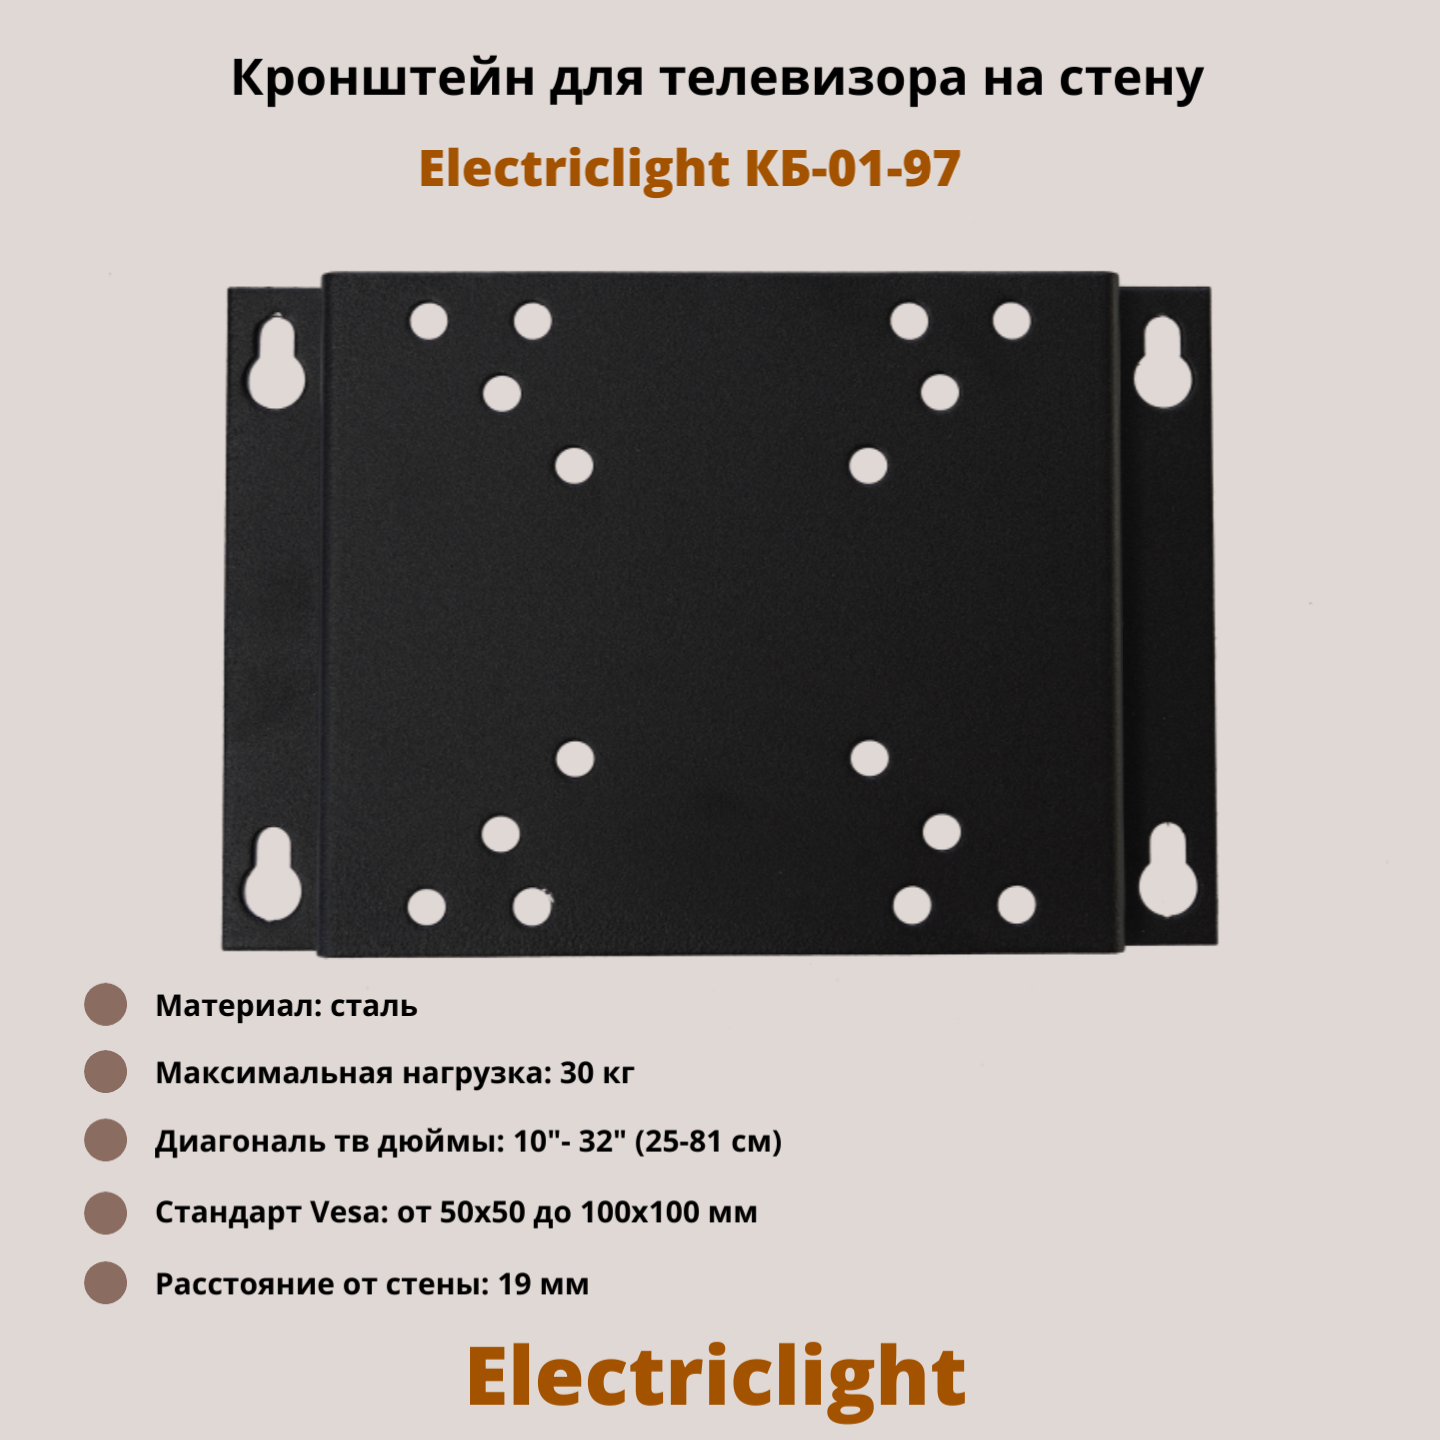 Фиксированный кронштейн для телевизора Electriclight КБ-01-97 10-32 черный